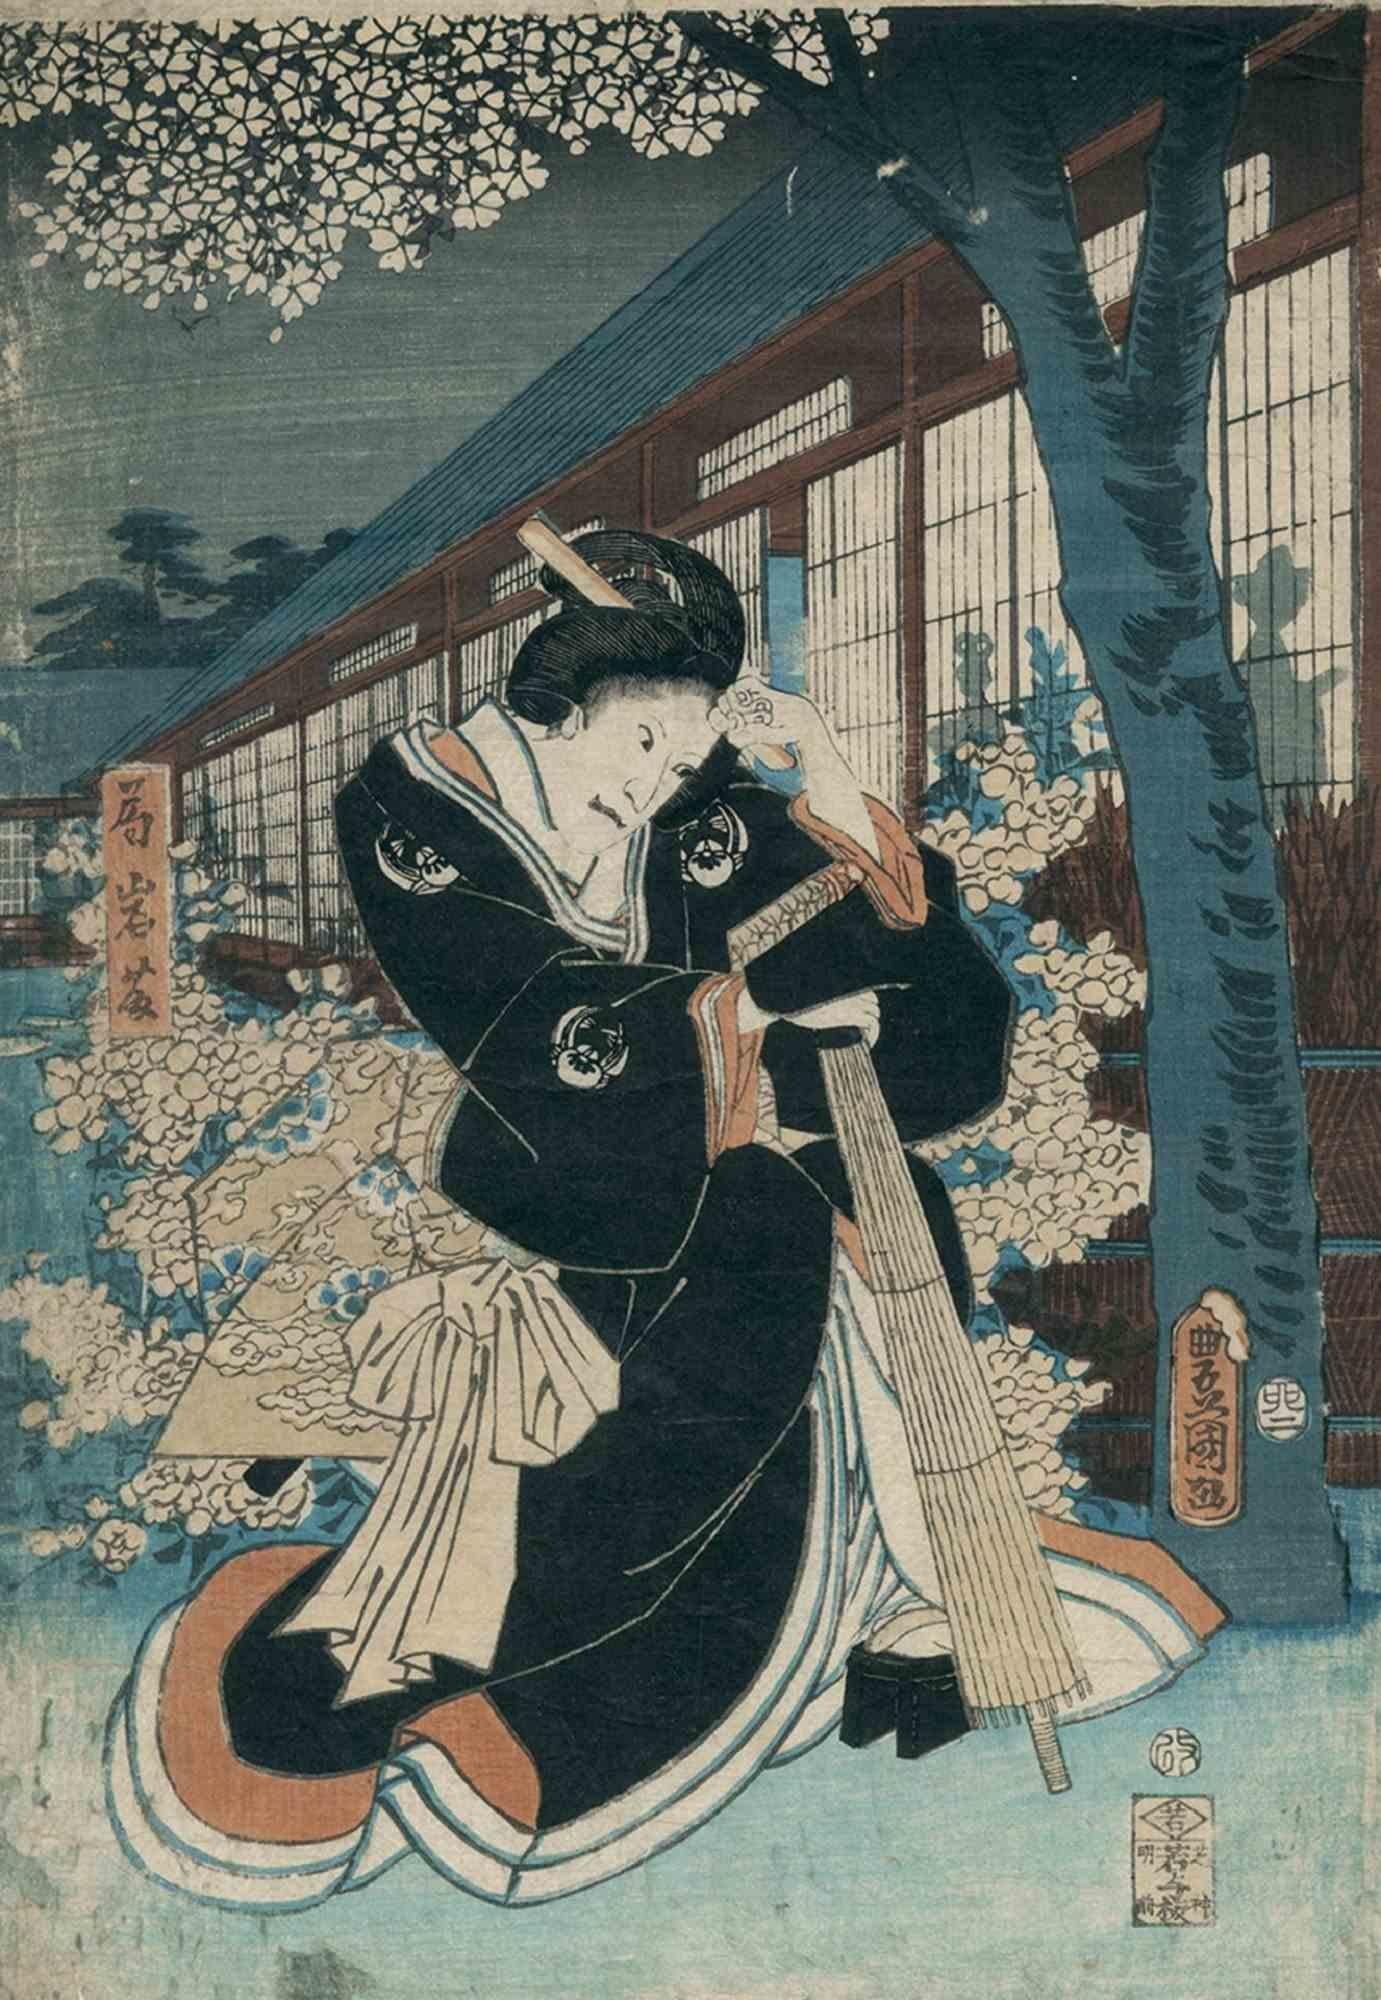 Utagawa Kunisada III Figurative Print - Bijin-ga - Woodblock Print by Utagawa Kunisada - 1850s